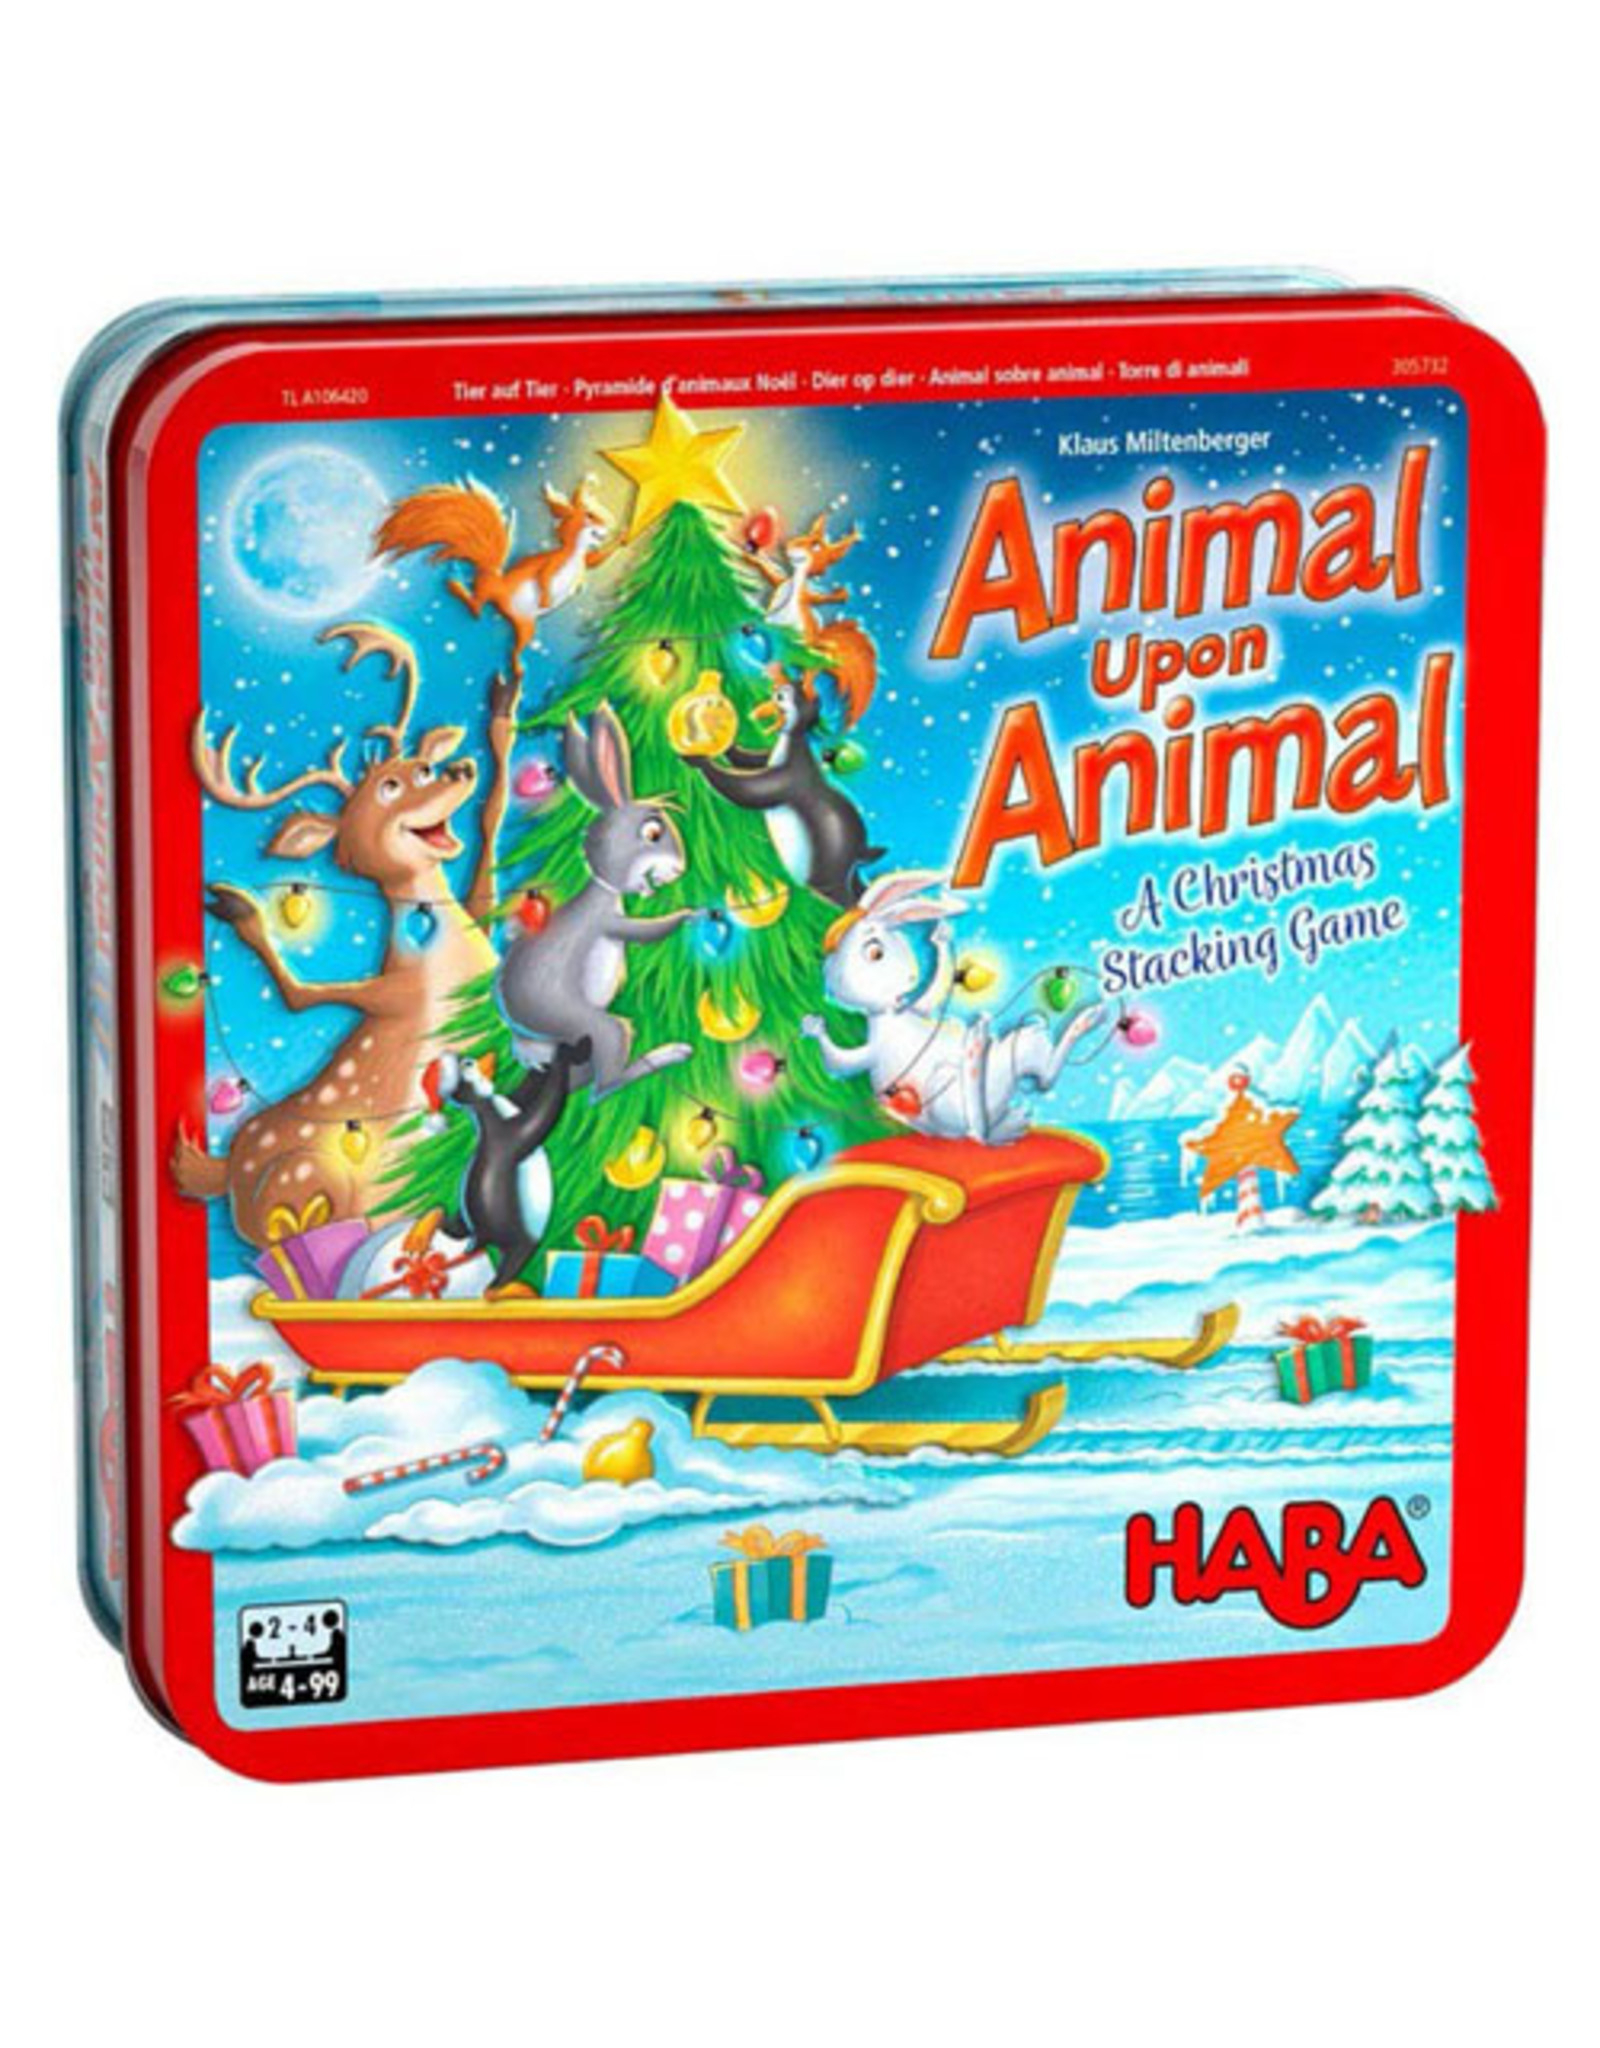 Animal Upon Animal Christmas